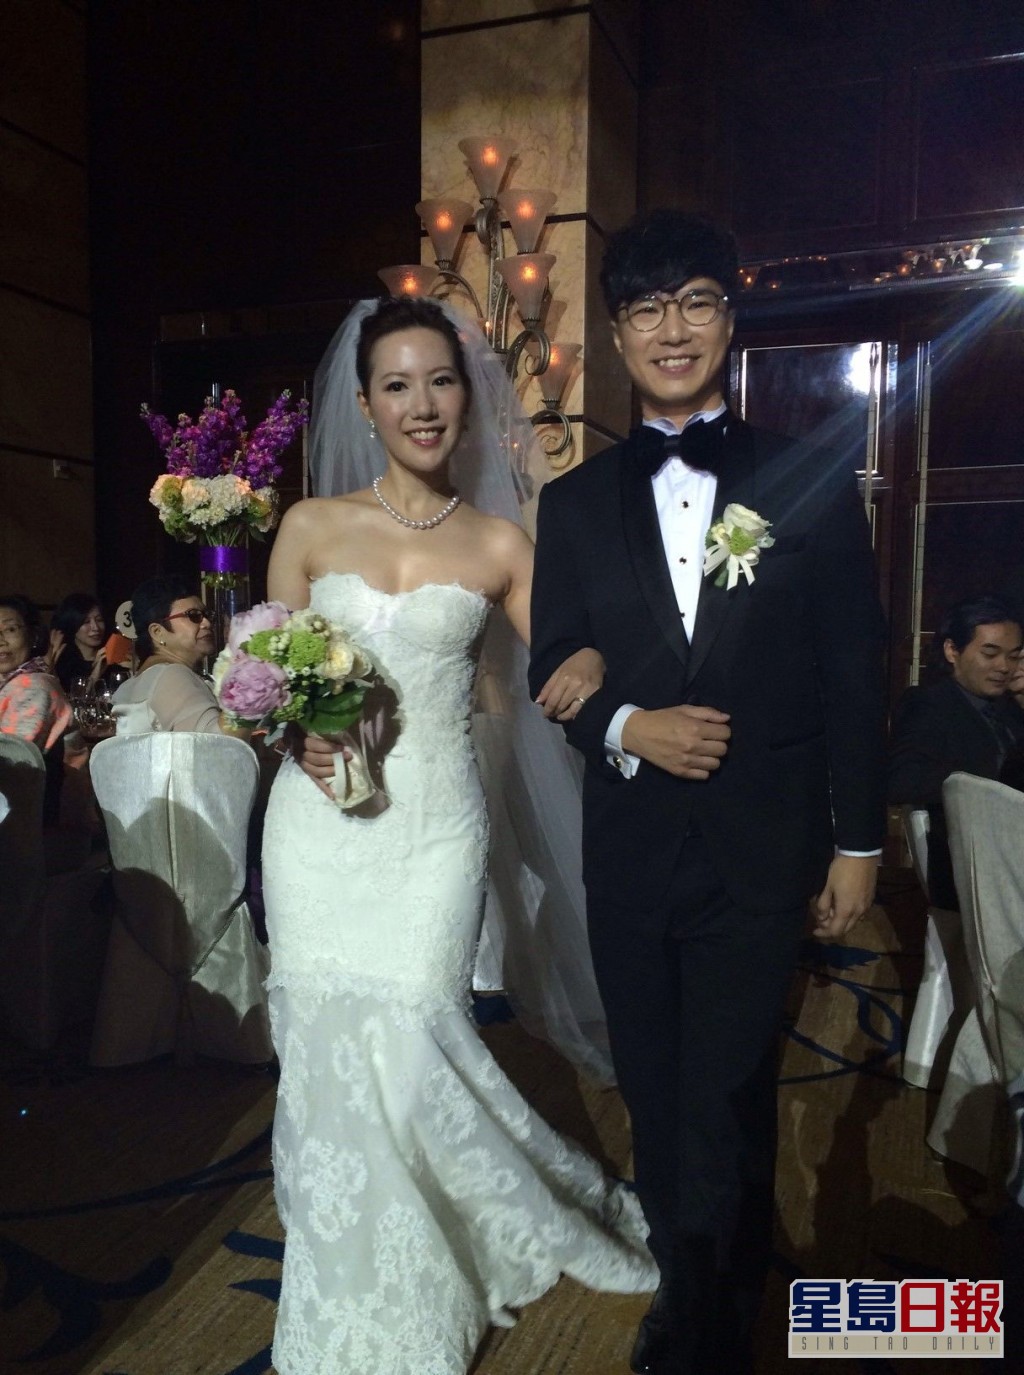 布志綸2014年豪花百萬在四季酒店筵開32席婚宴，稱幾乎花光自己身家。